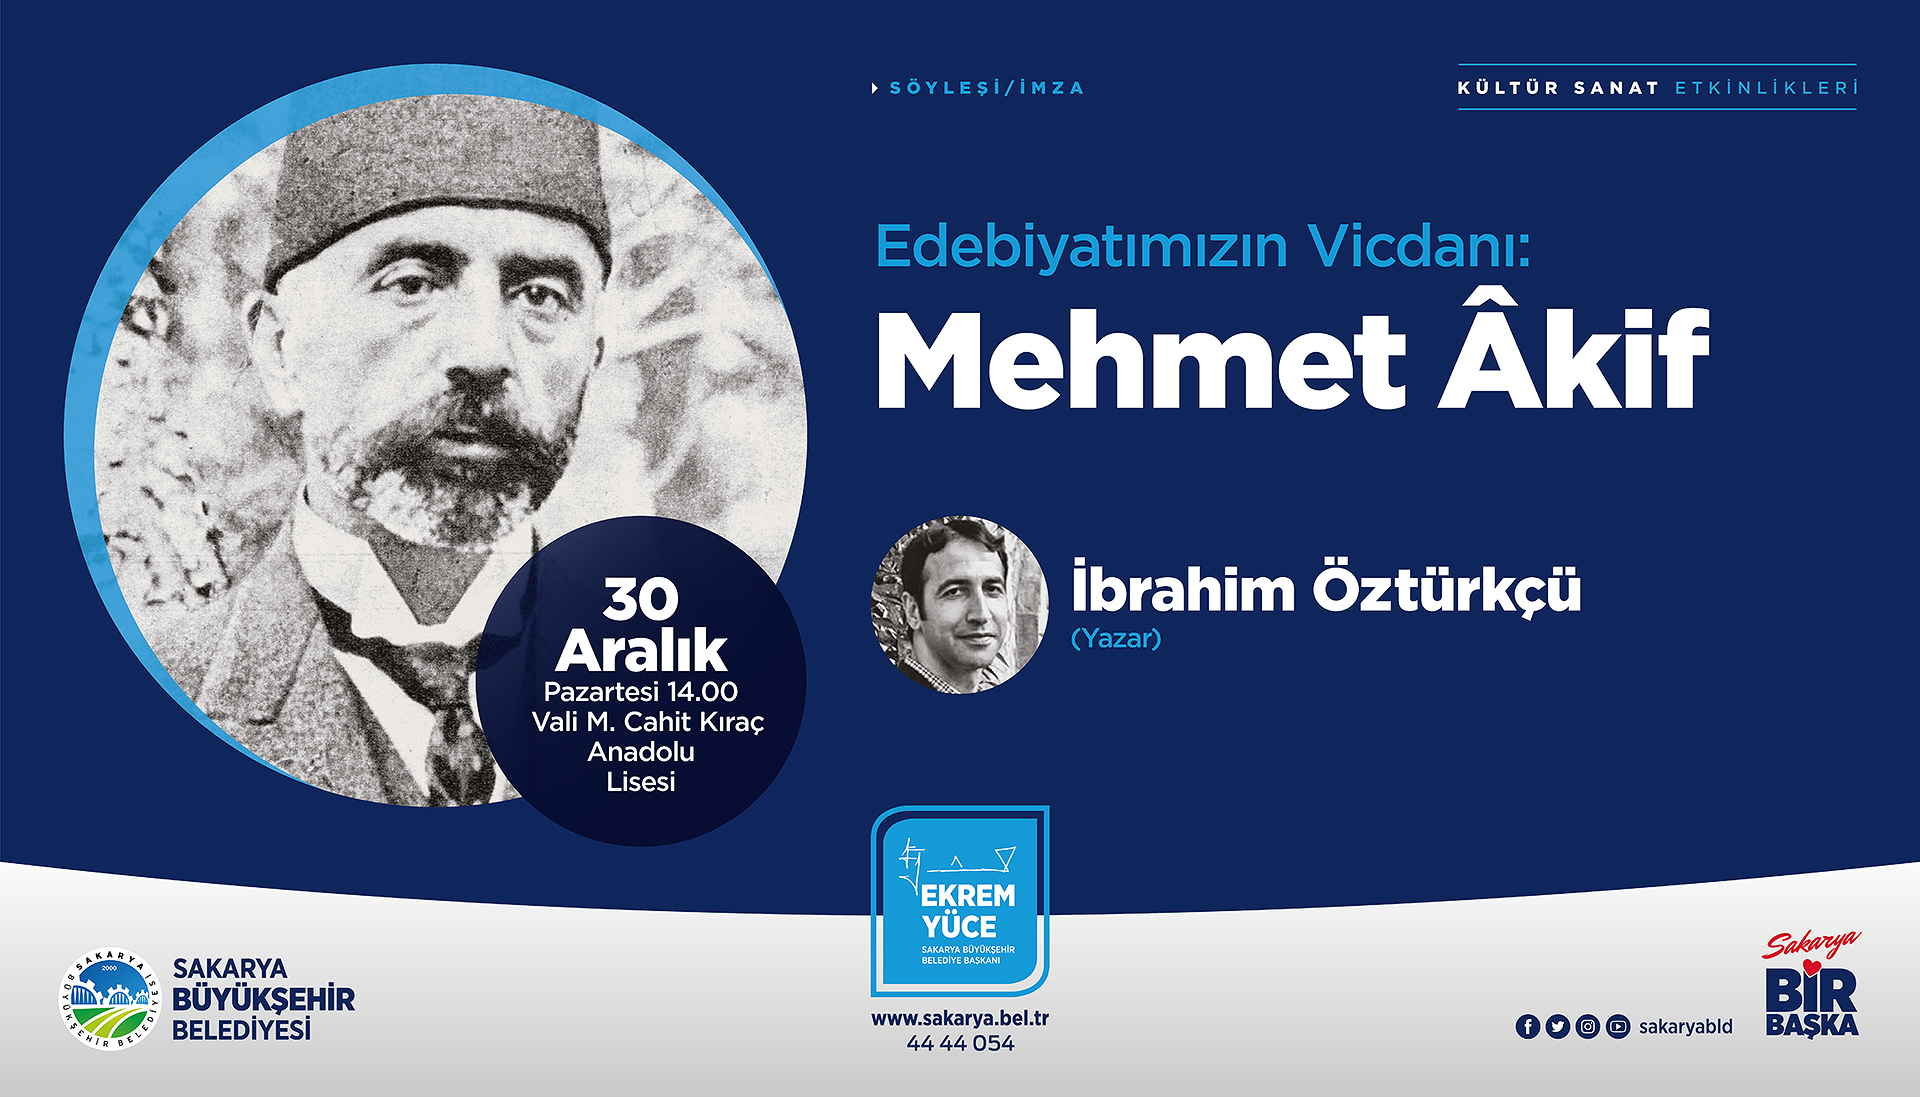 Edebiyatımızın Vicdanı: Mehmet Akif’